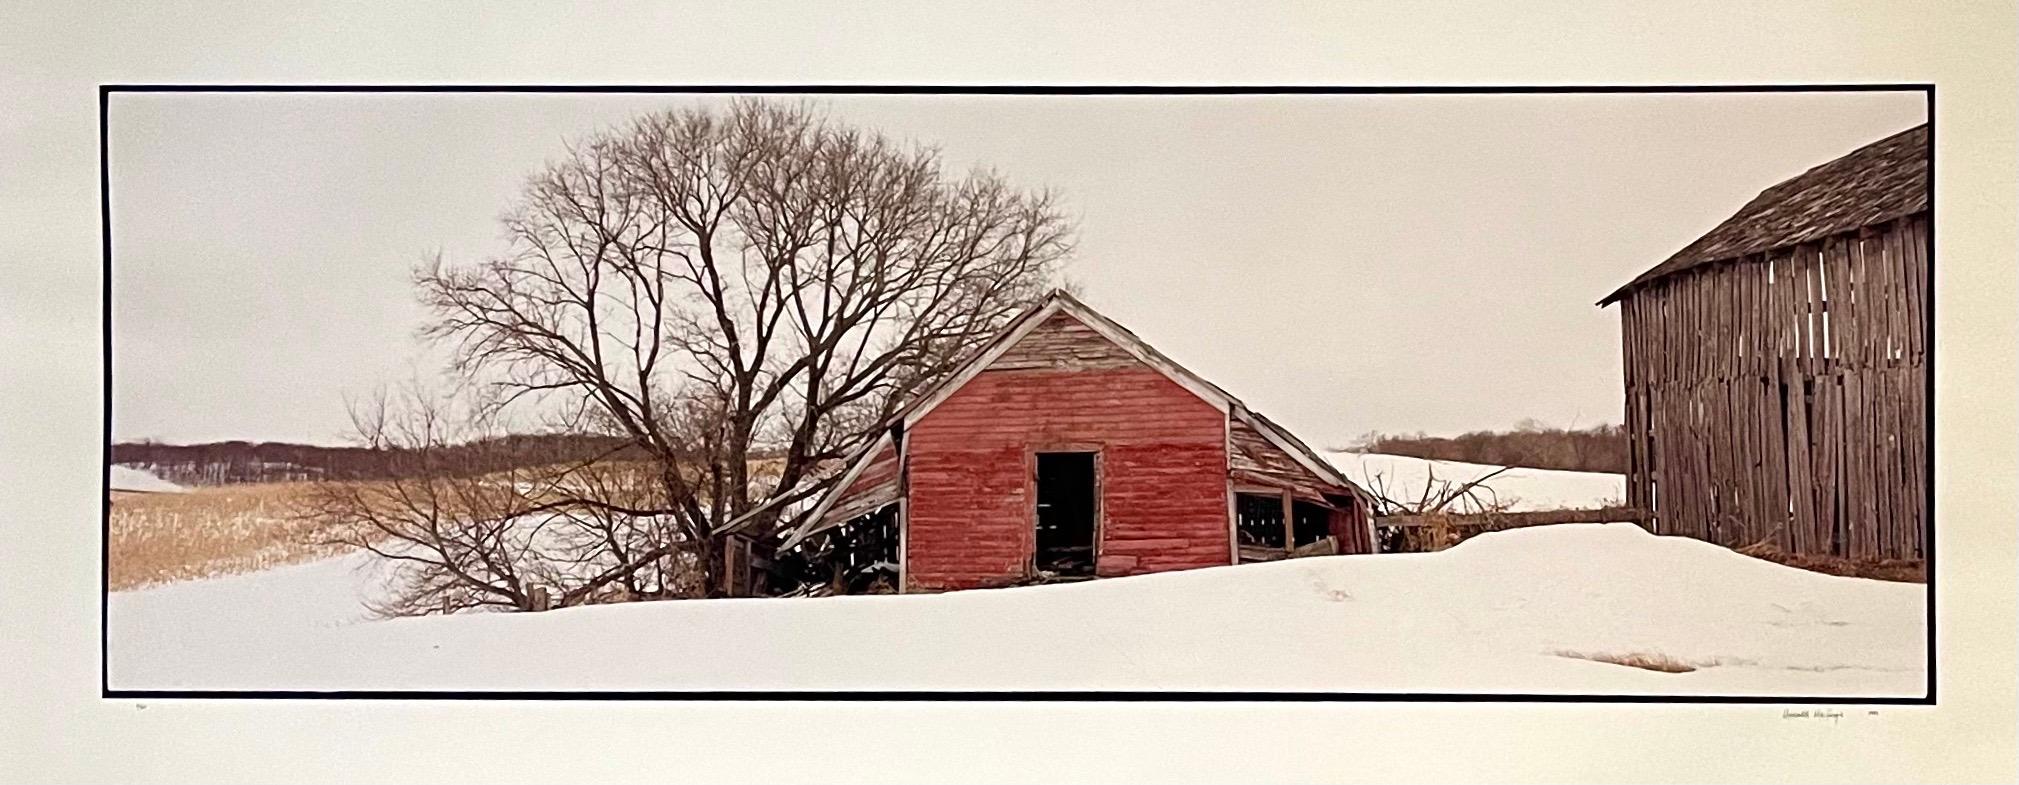 Color Photograph Maxwell Mackenzie - La ferme, paysage d'hiver, grande photographie Panoramique couleur vintage signée